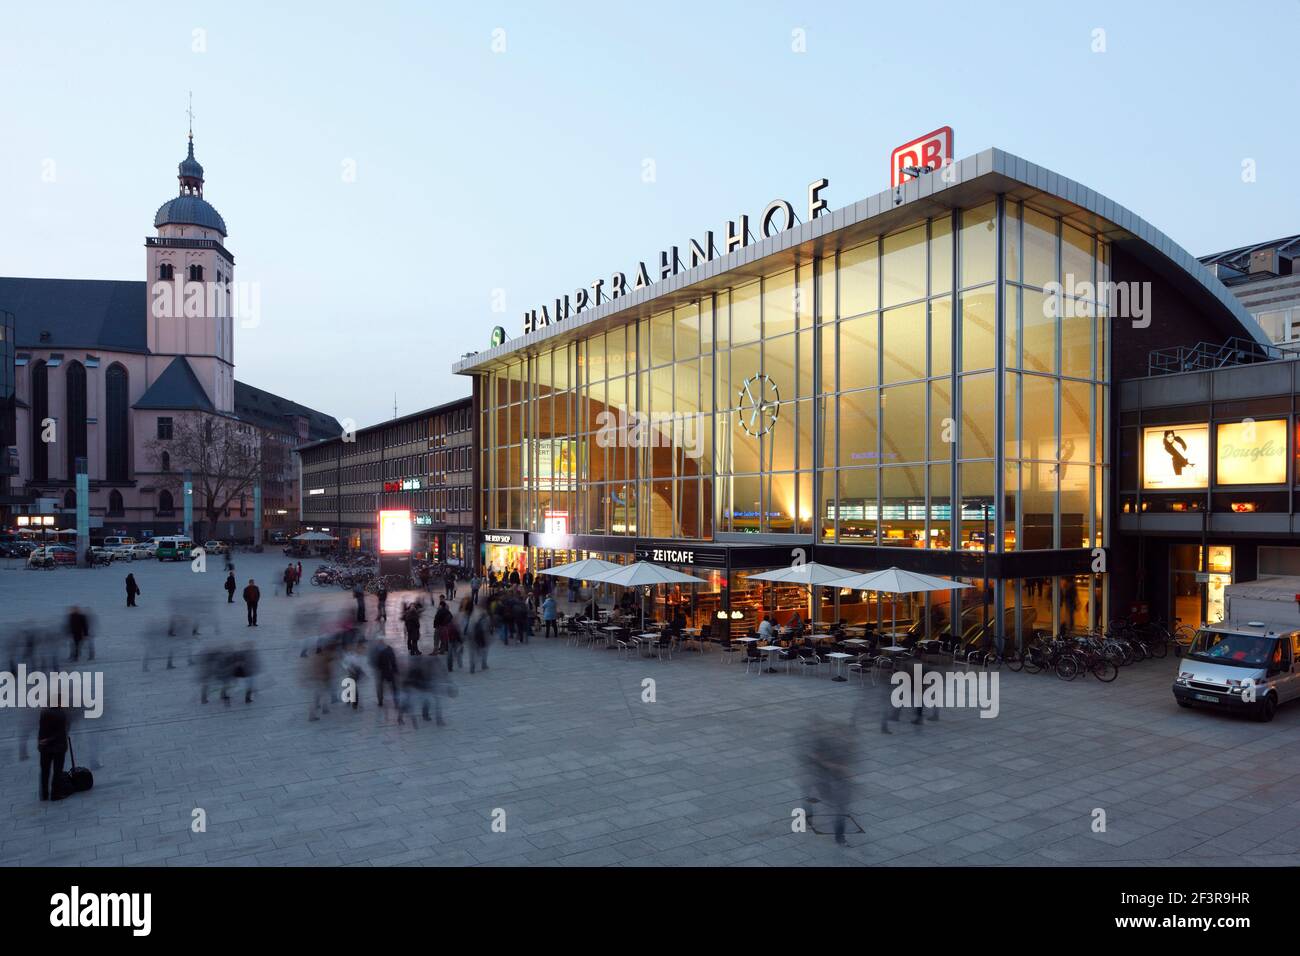 Neue Eingangshalle der Architekten Schmitt und Schneider von 1957 mit ihrer schalenfˆrmigen Dachkonstruktion in der D‰mmerung, Kˆln, Hauptbahnhof Stock Photo